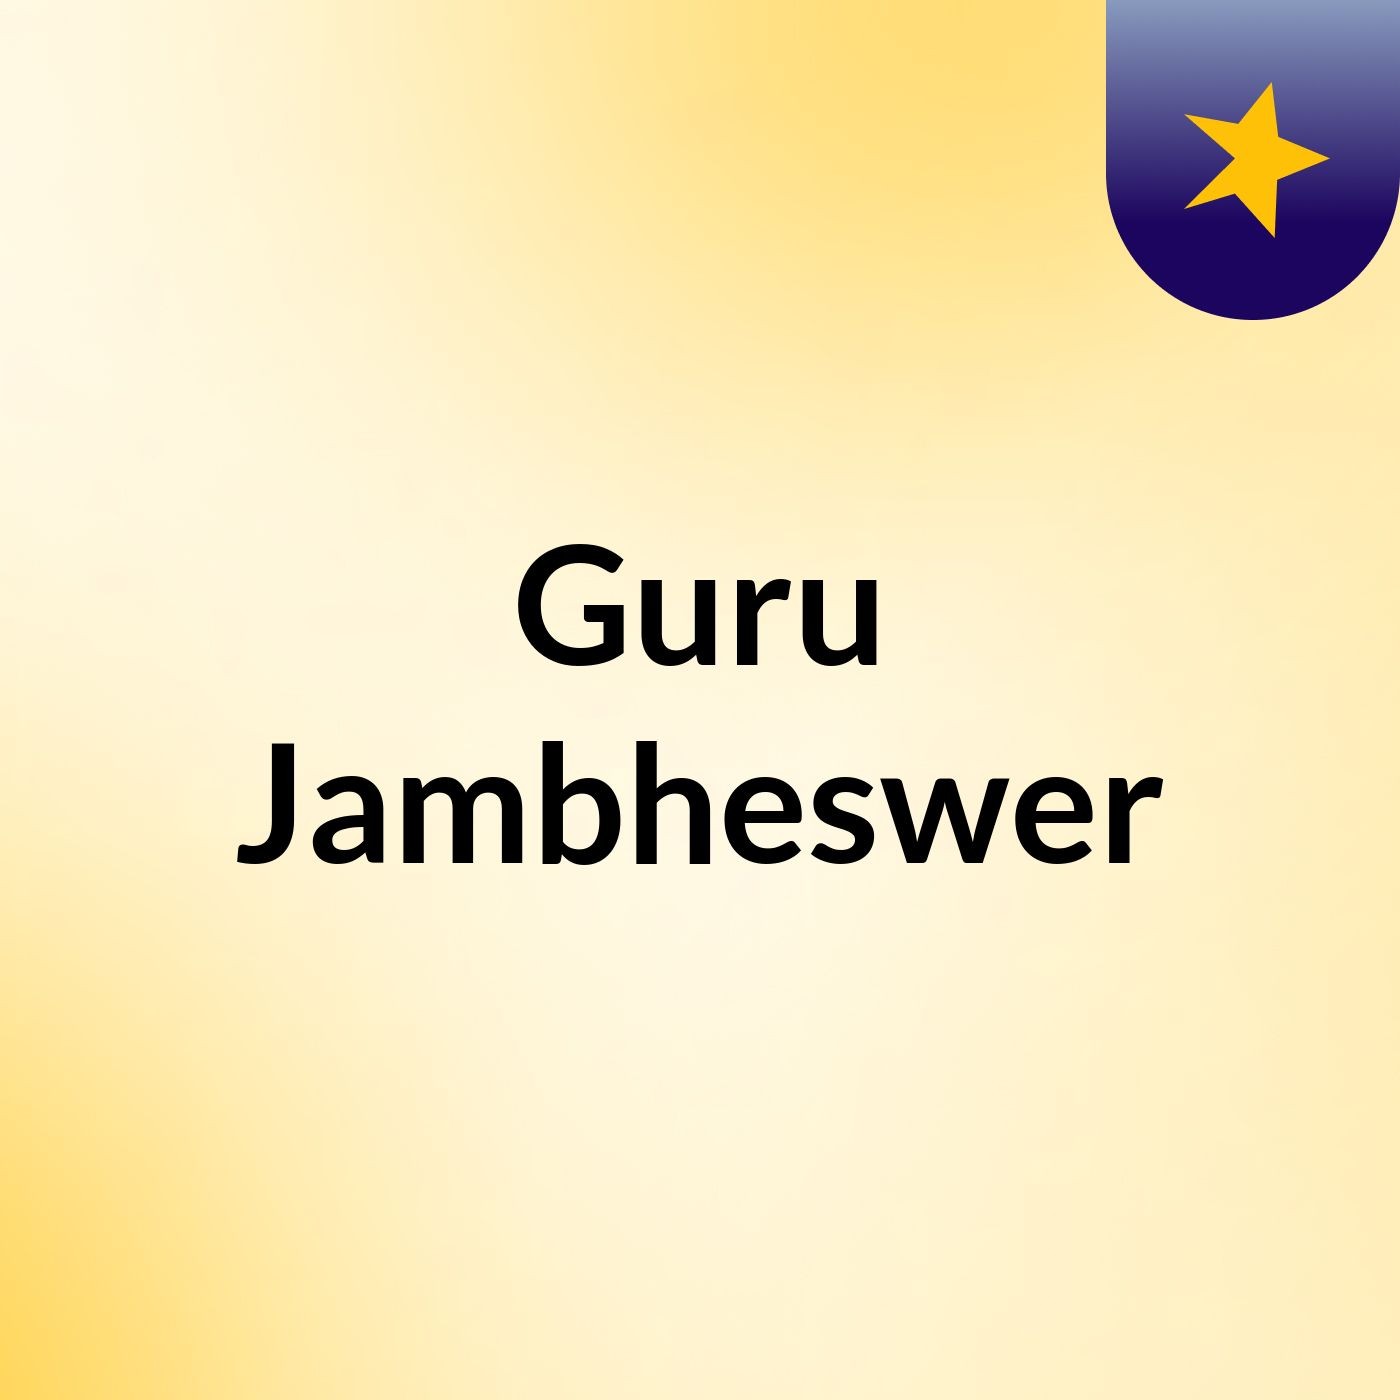 Guru Jambheswer